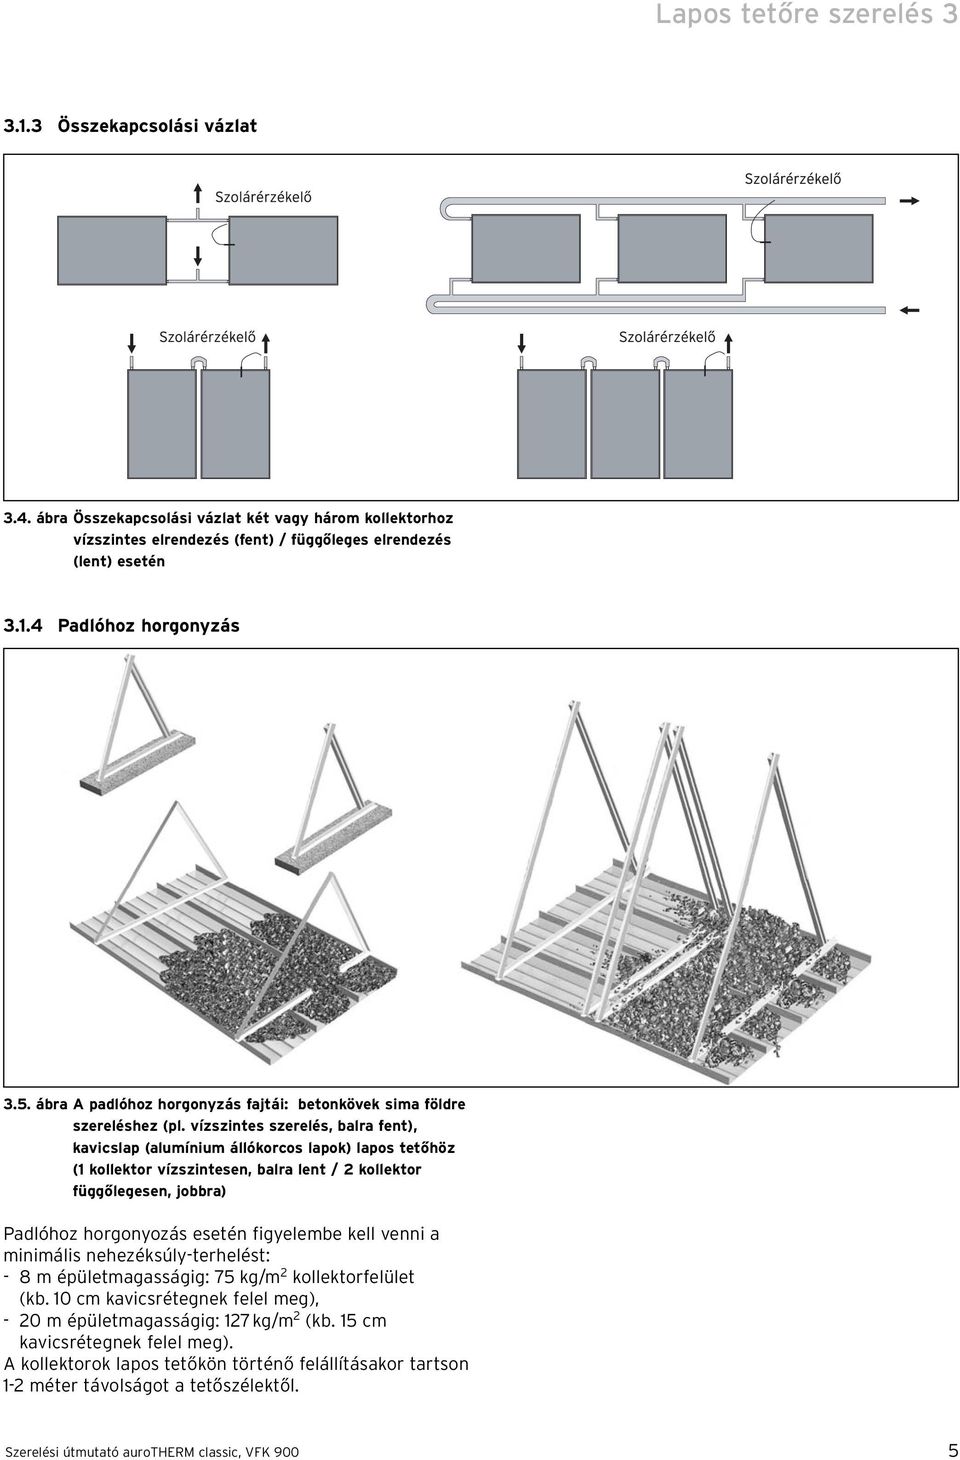 vízszintes szerelés, balra fent), kavicslap (alumínium állókorcos lapok) lapos tetőhöz (1 kollektor vízszintesen, balra lent / 2 kollektor függőlegesen, jobbra) Padlóhoz horgonyozás esetén figyelembe